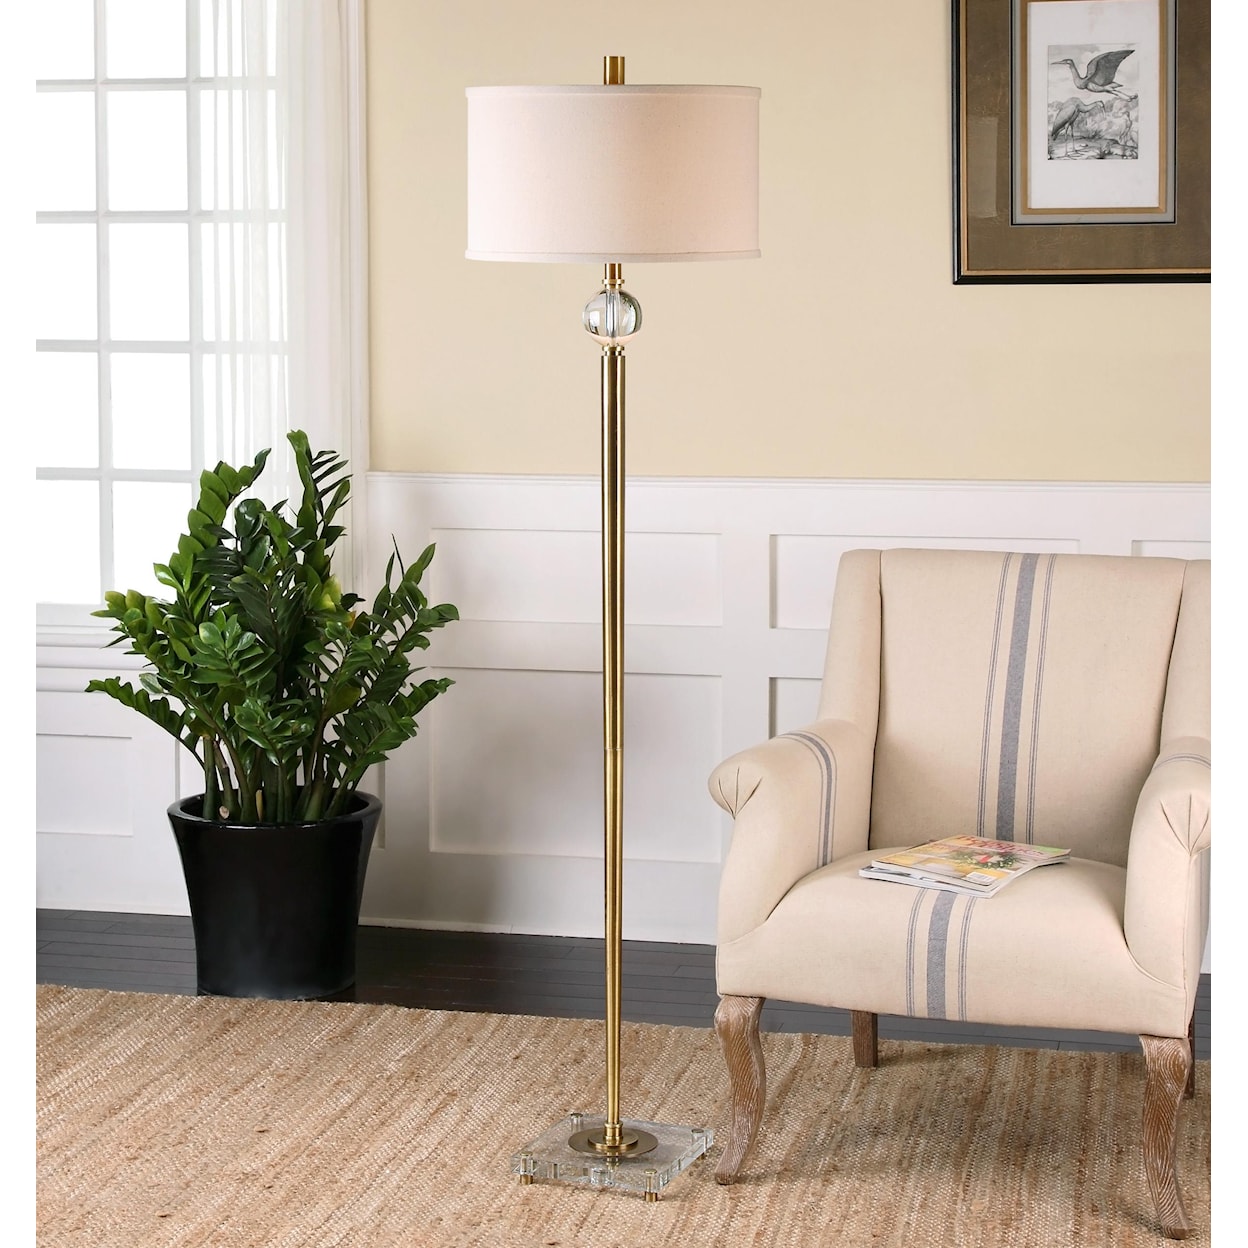 Uttermost Floor Lamps Mesita Brass Floor Lamp